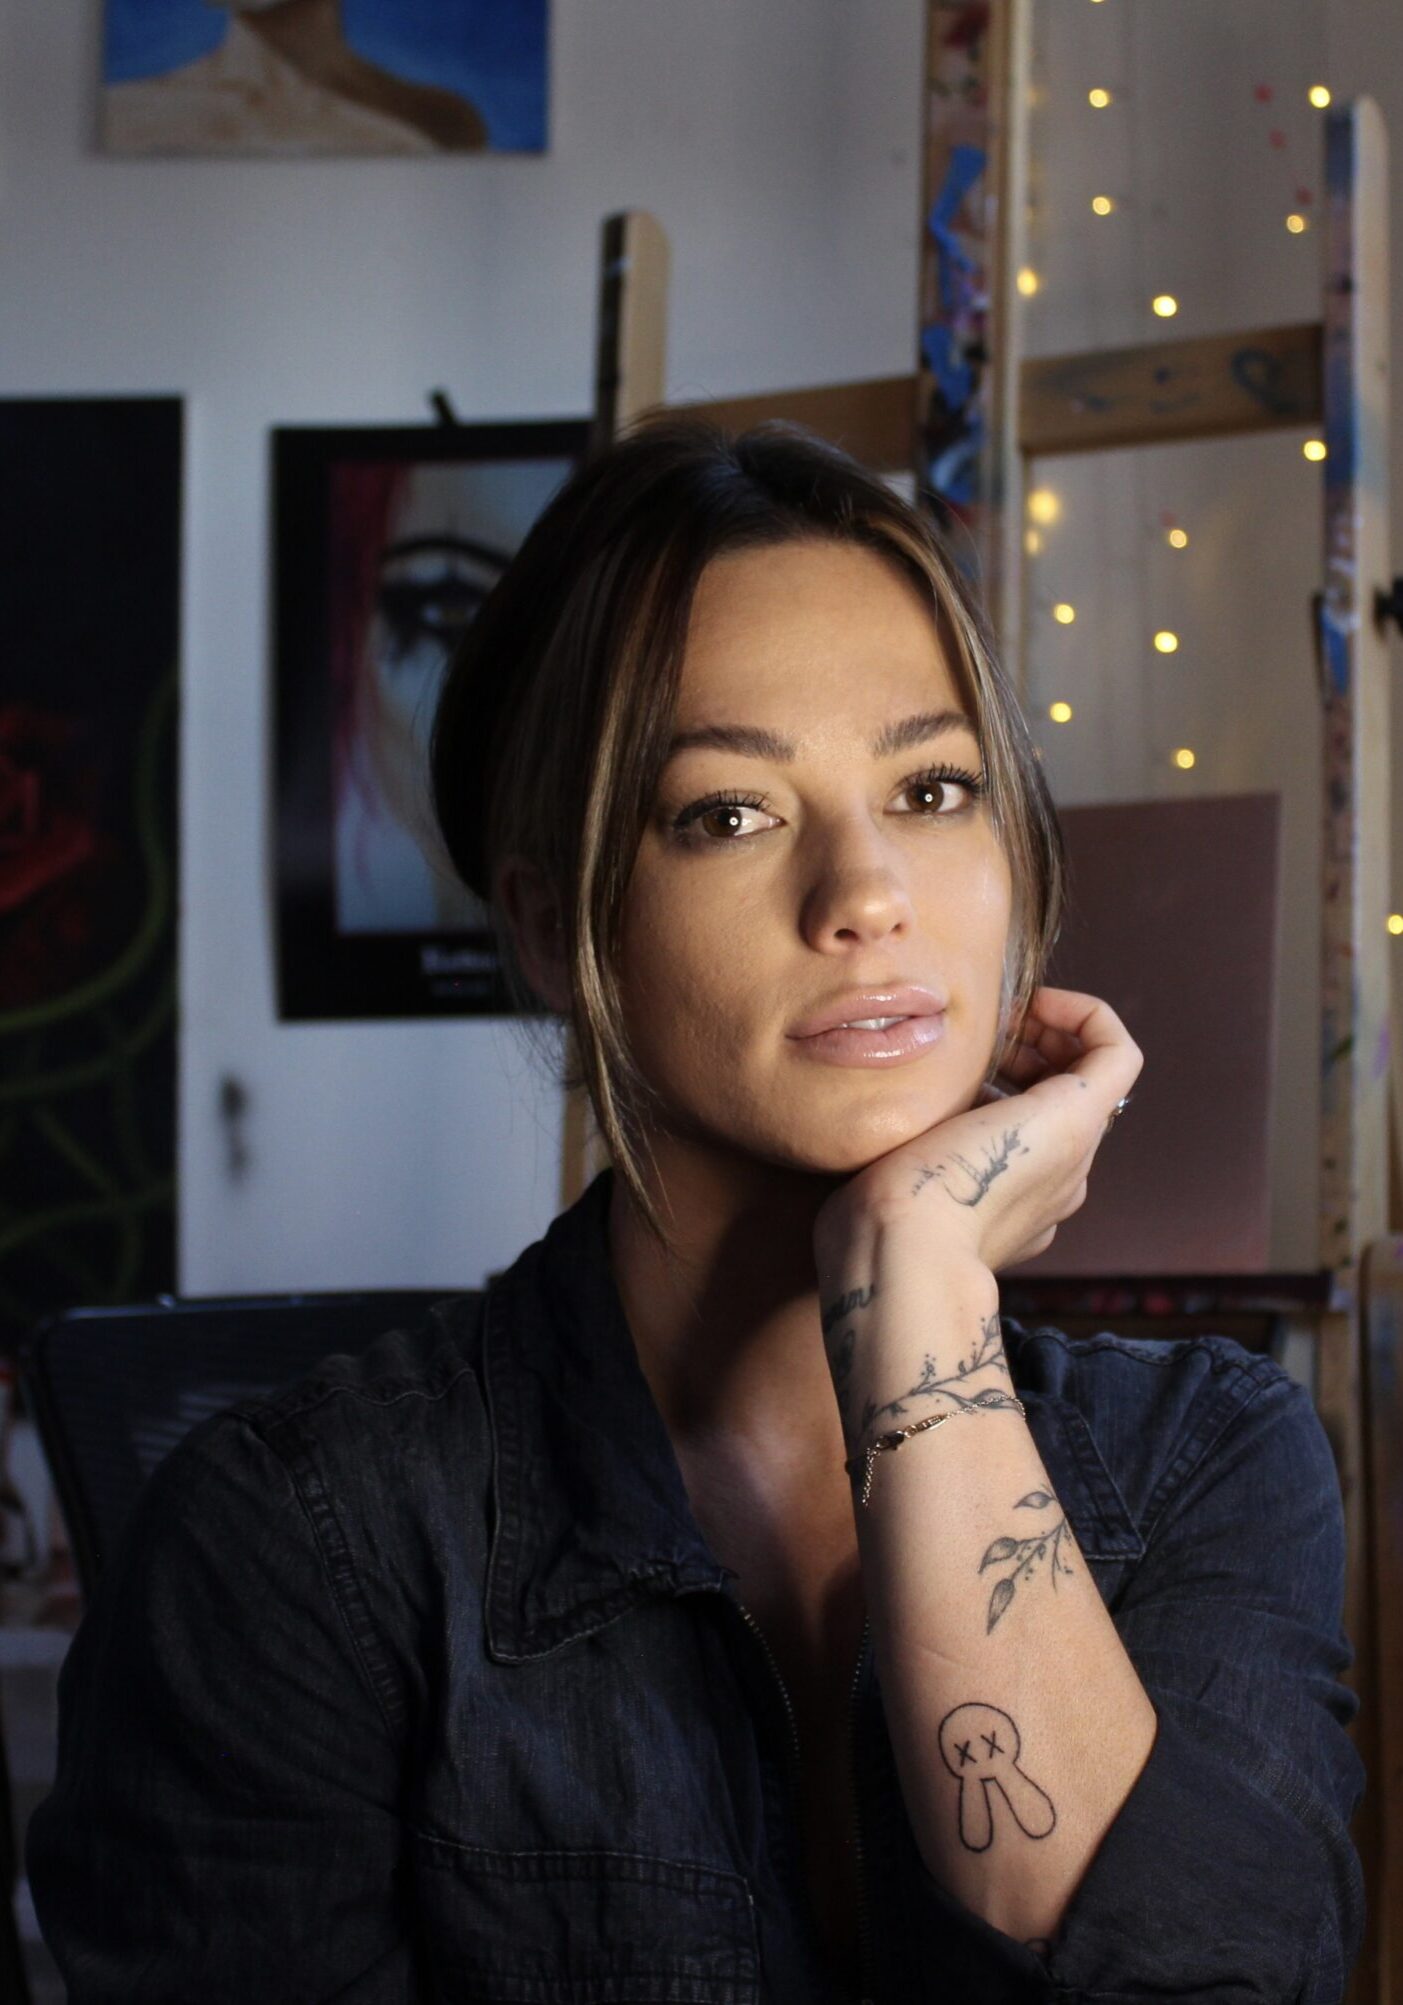 artist Alexa Jacobs in her studio